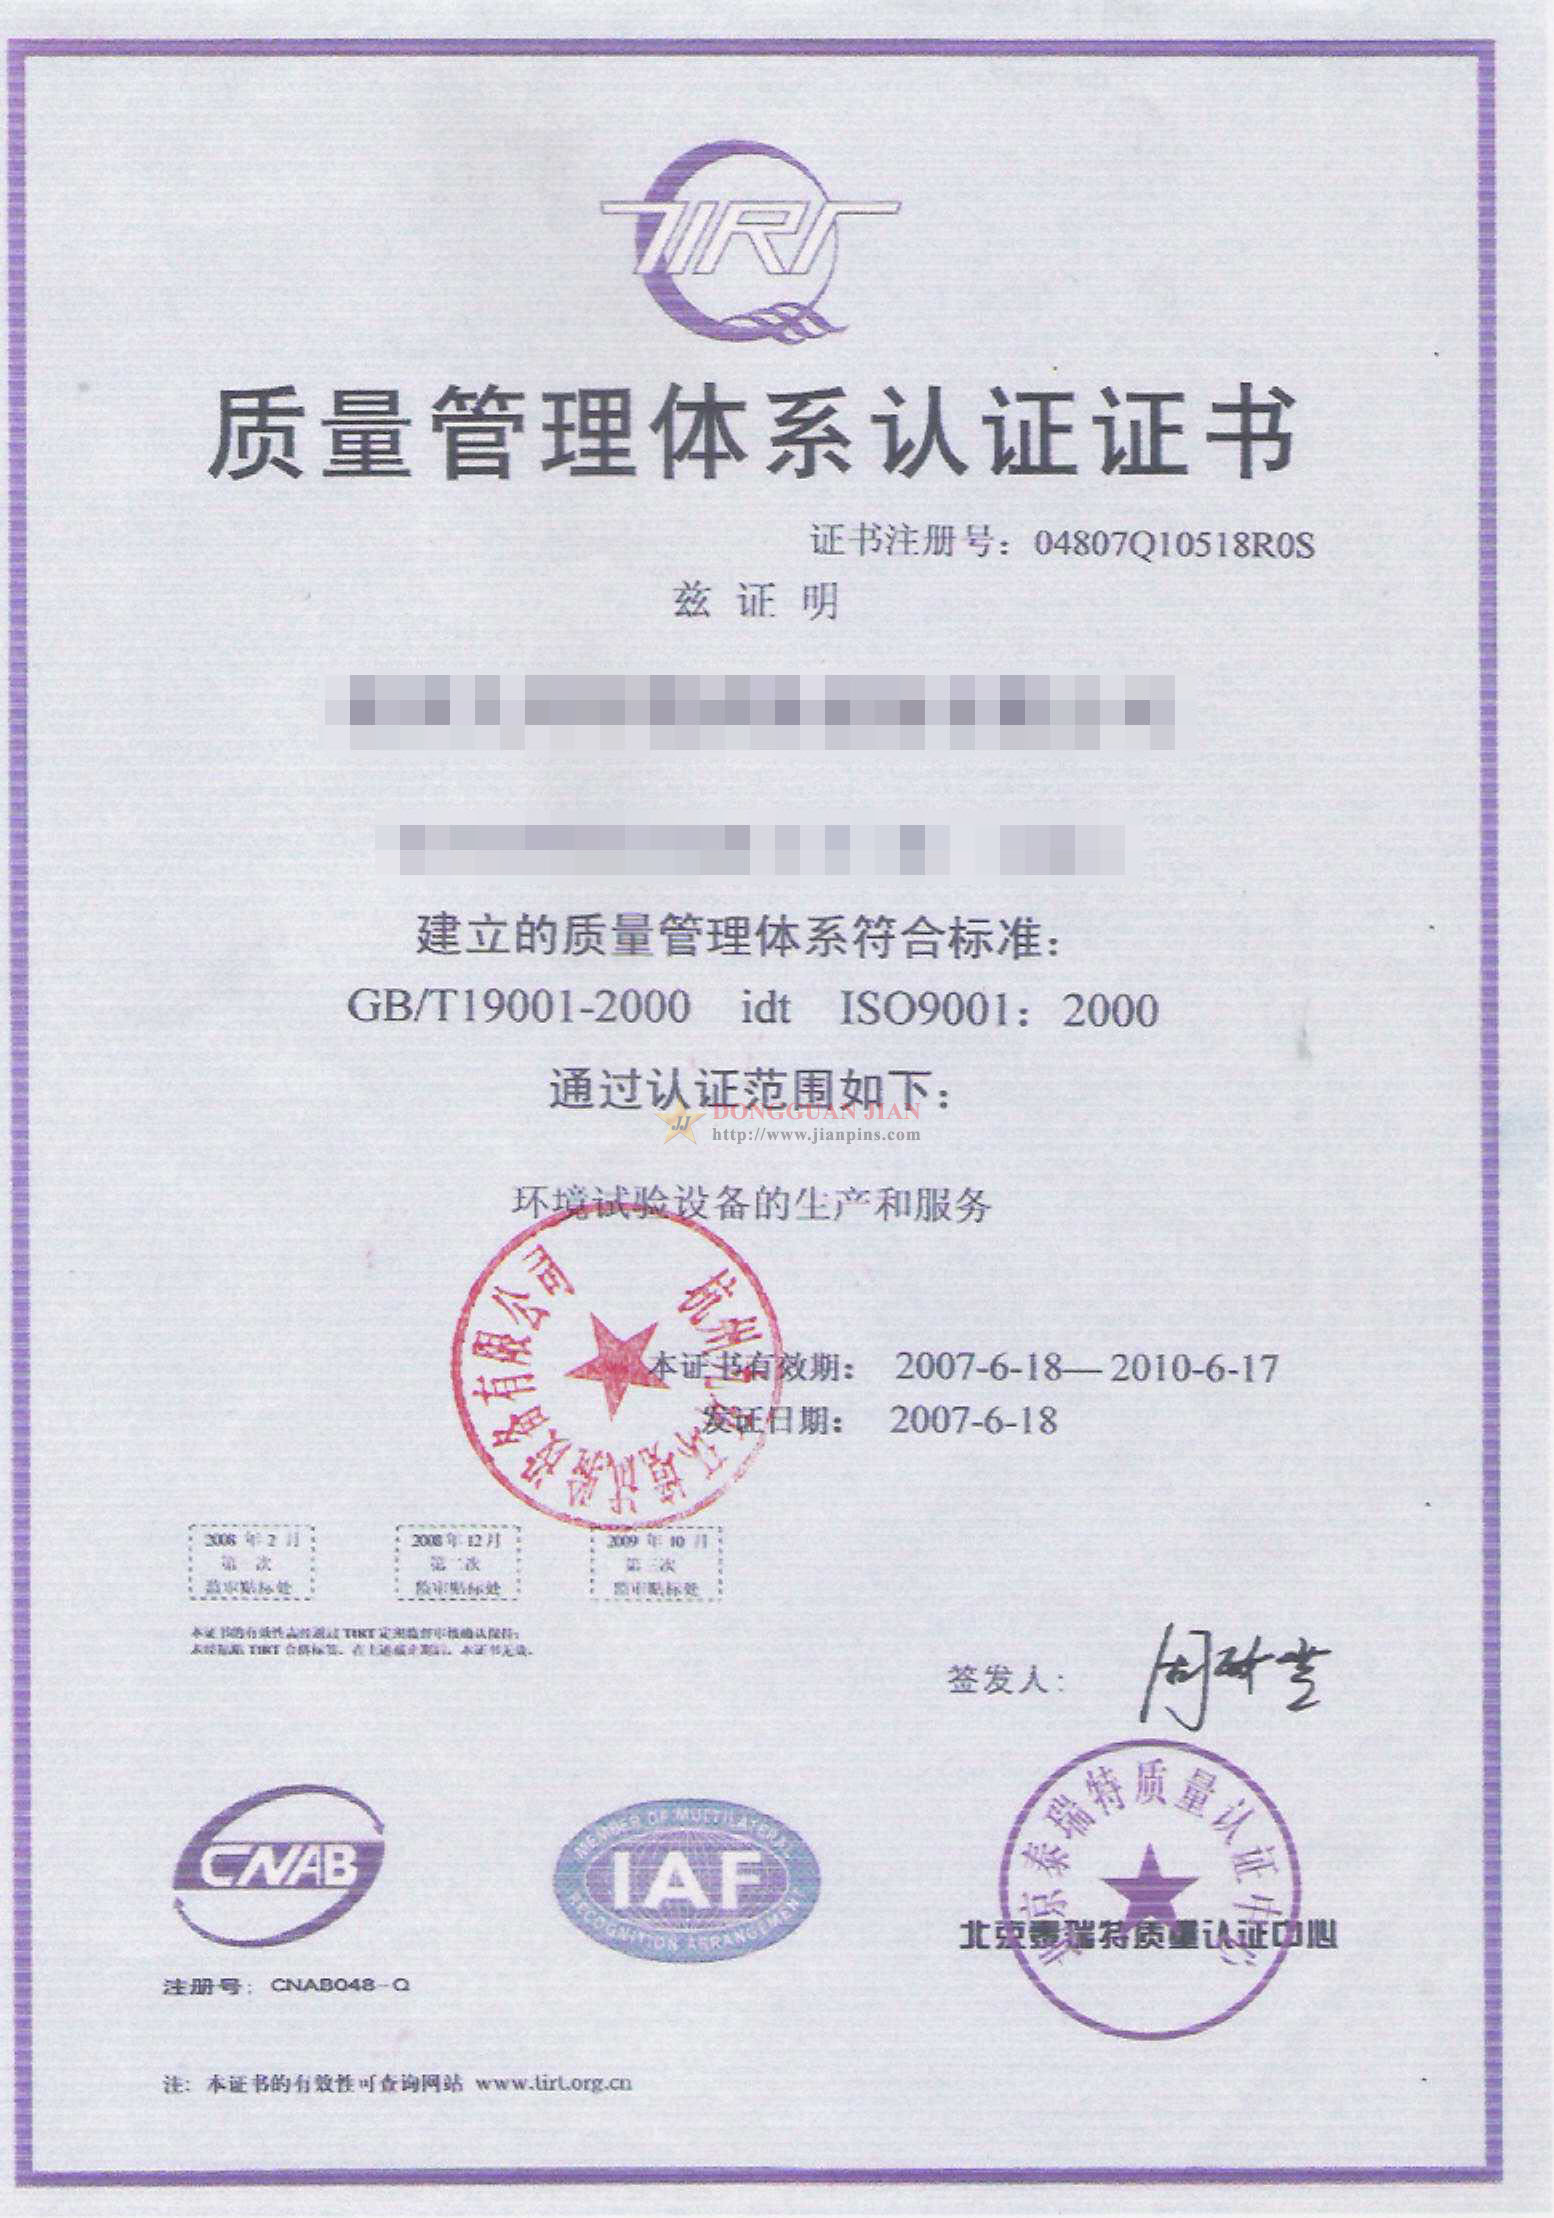 Certificaten2